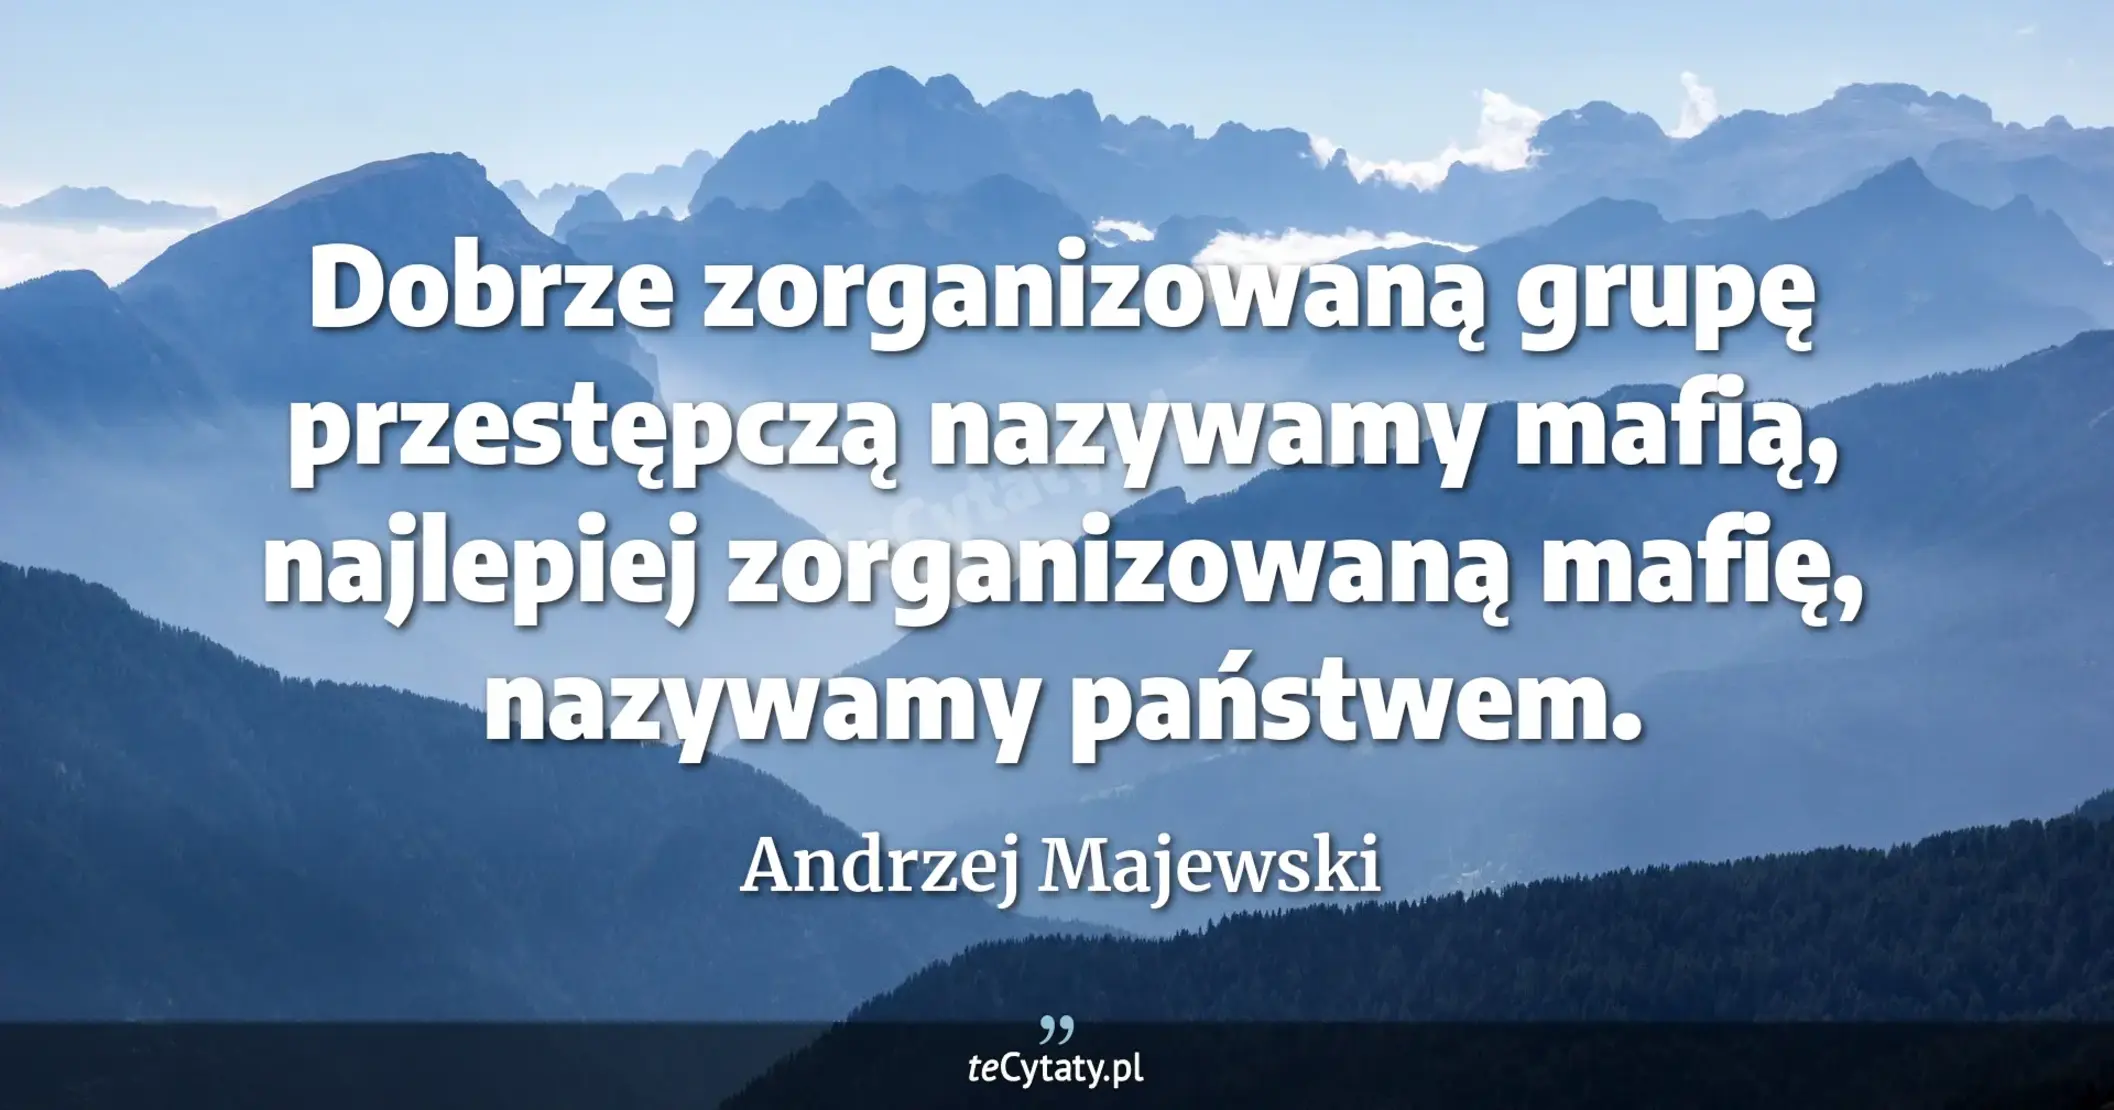 Dobrze zorganizowaną grupę przestępczą nazywamy mafią, najlepiej zorganizowaną mafię, nazywamy państwem. - Andrzej Majewski